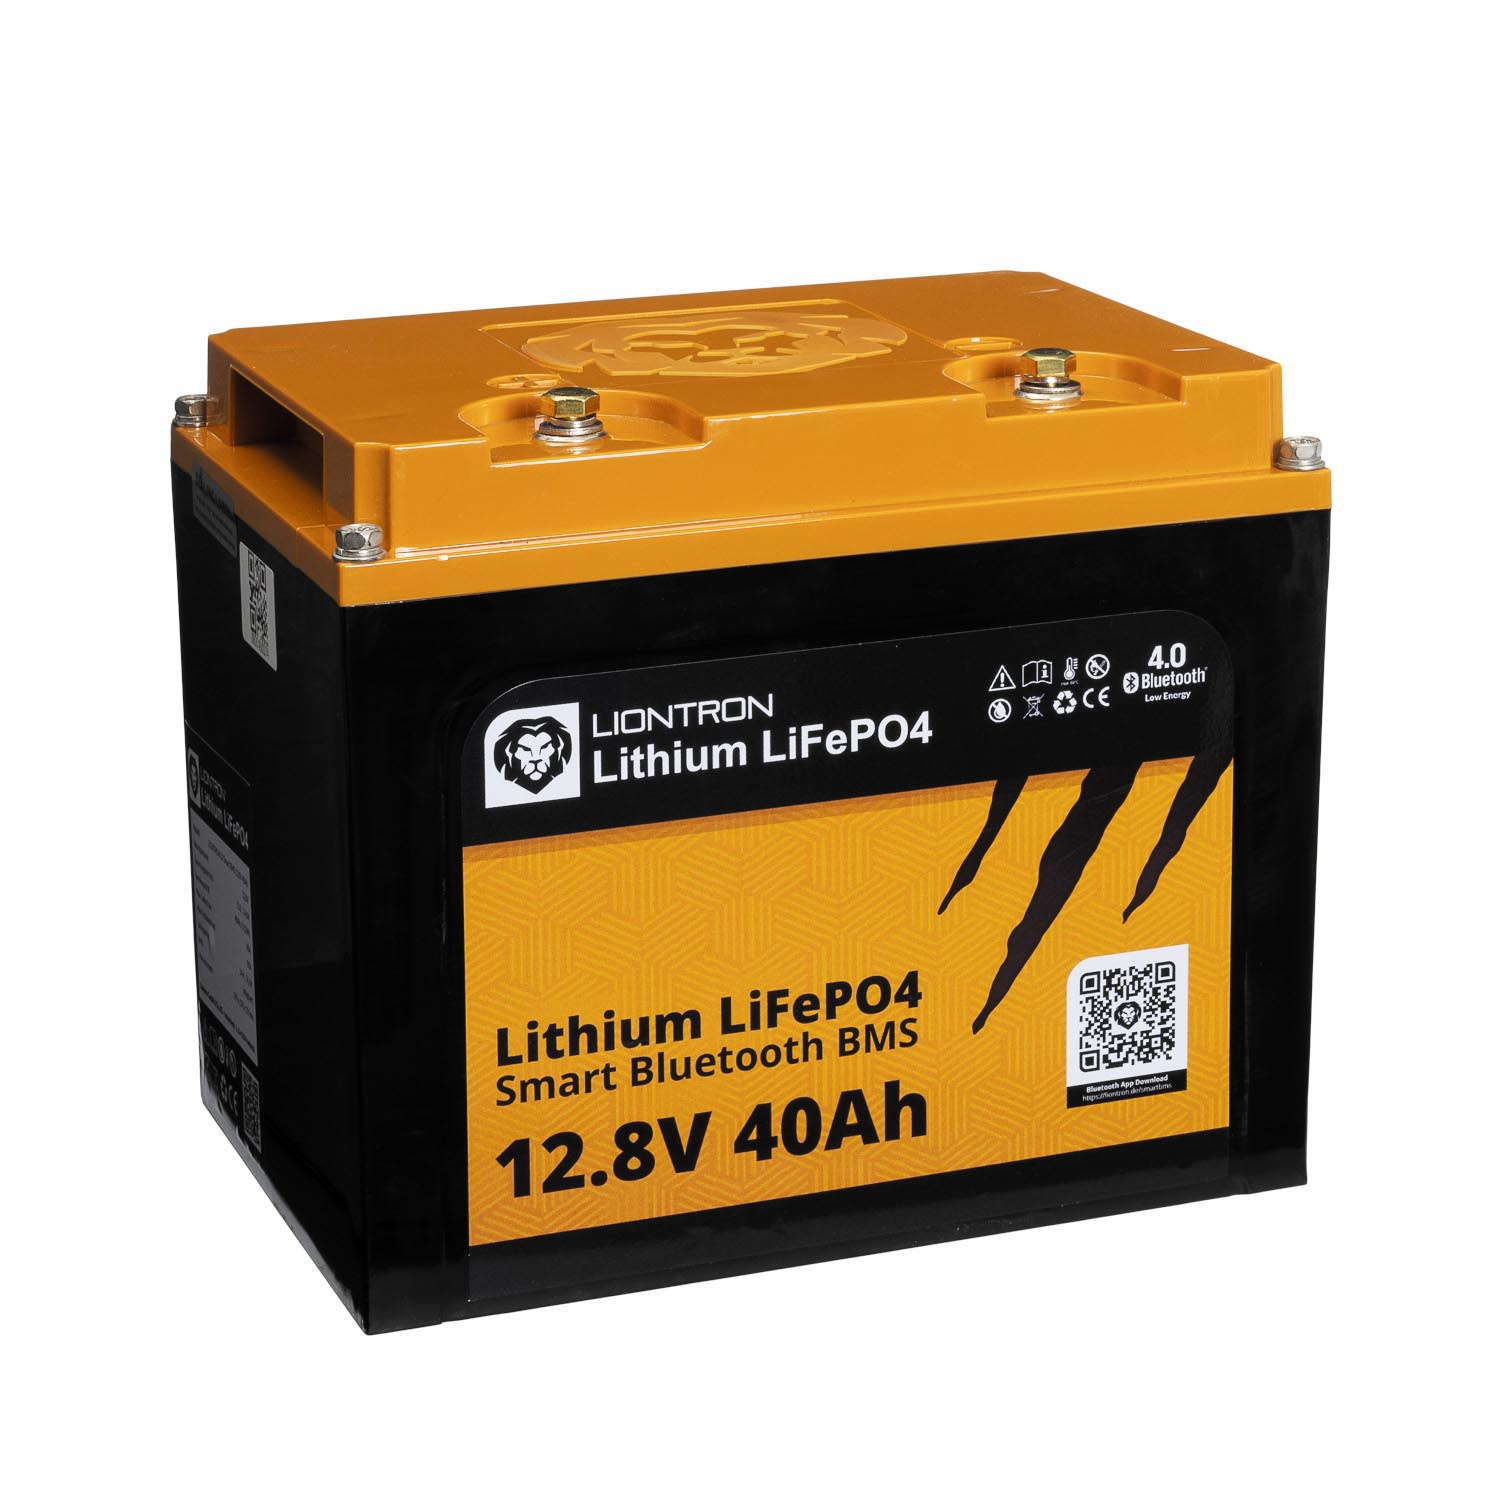 Lithium Batterien für Ihr Wohnmobil: LiFePO4 Akkus